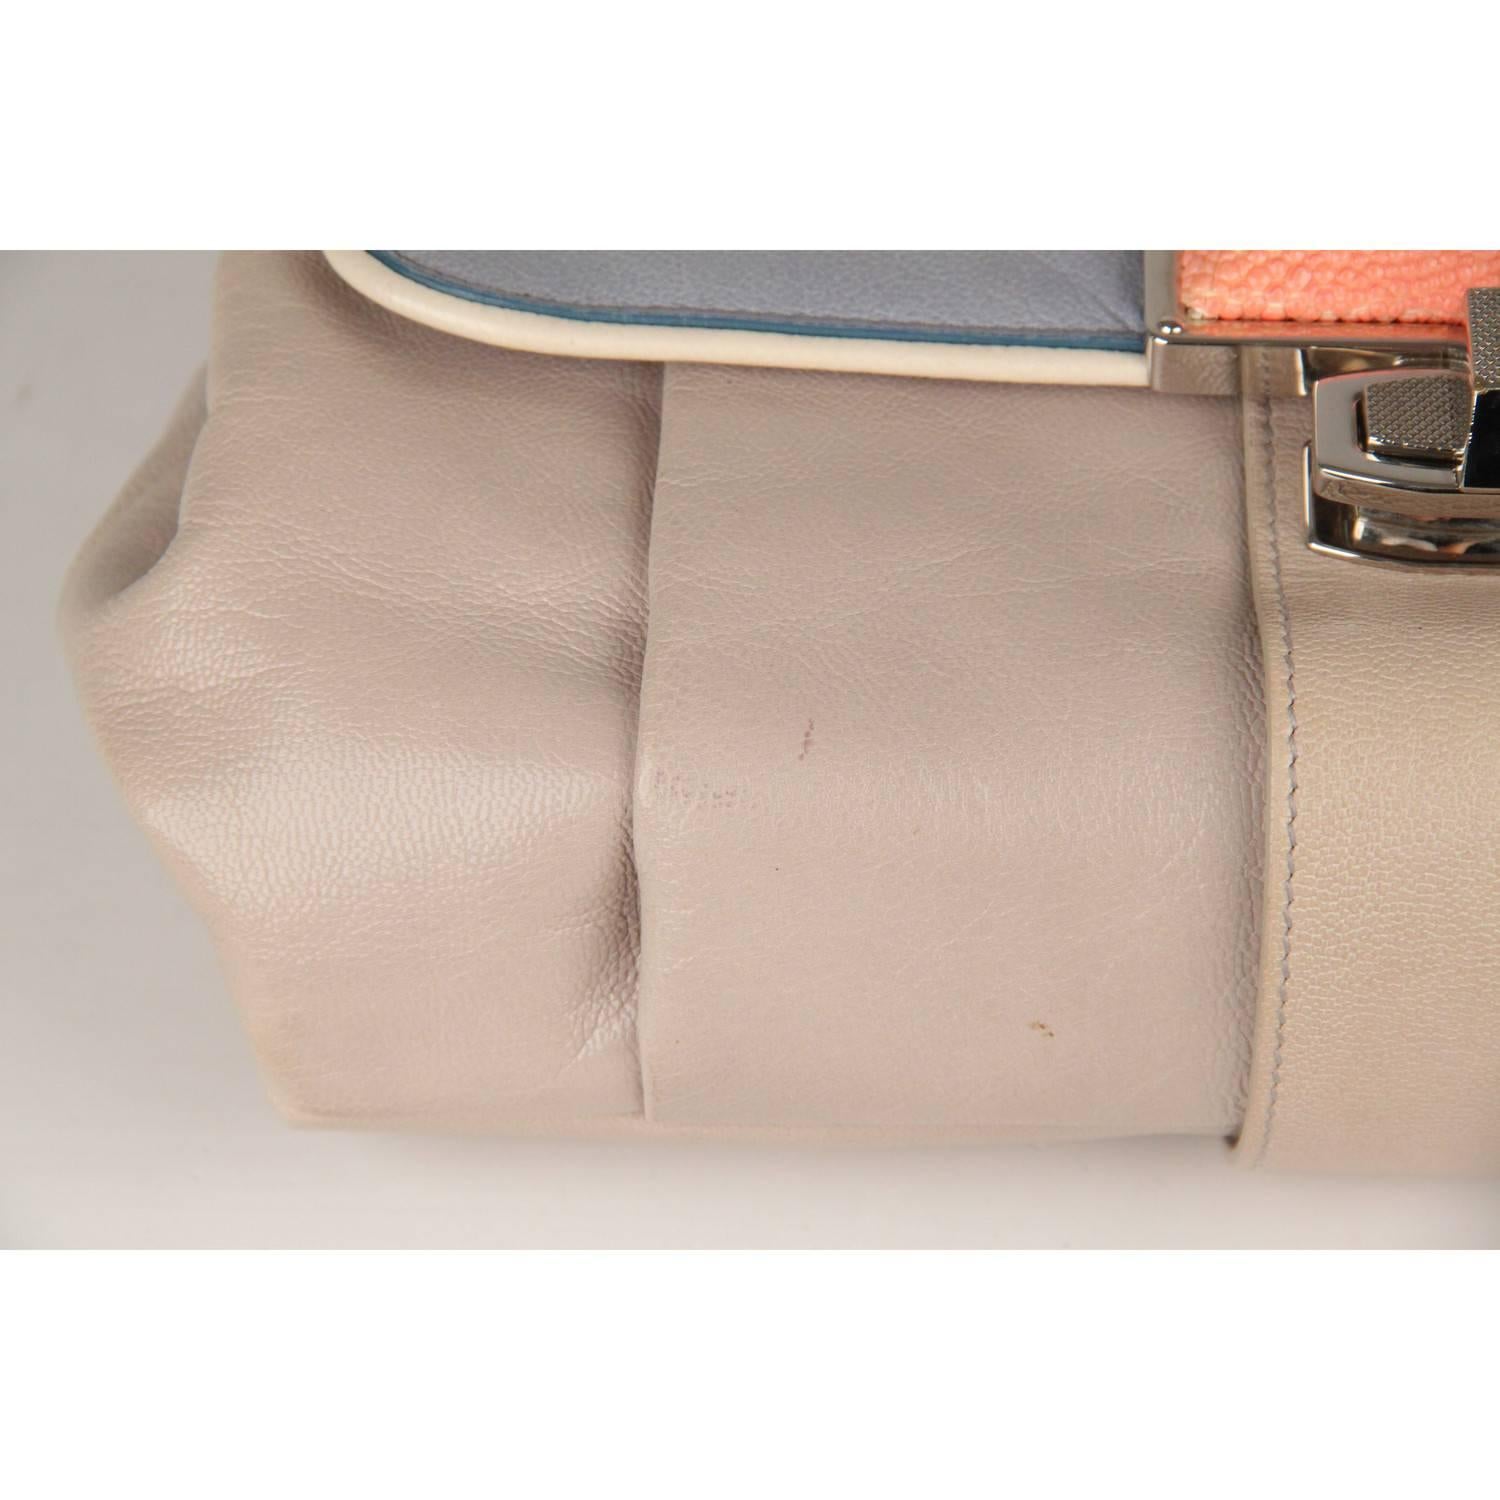 BALENCIAGA Gray Leather Cherche Midi Clutch Bag 2